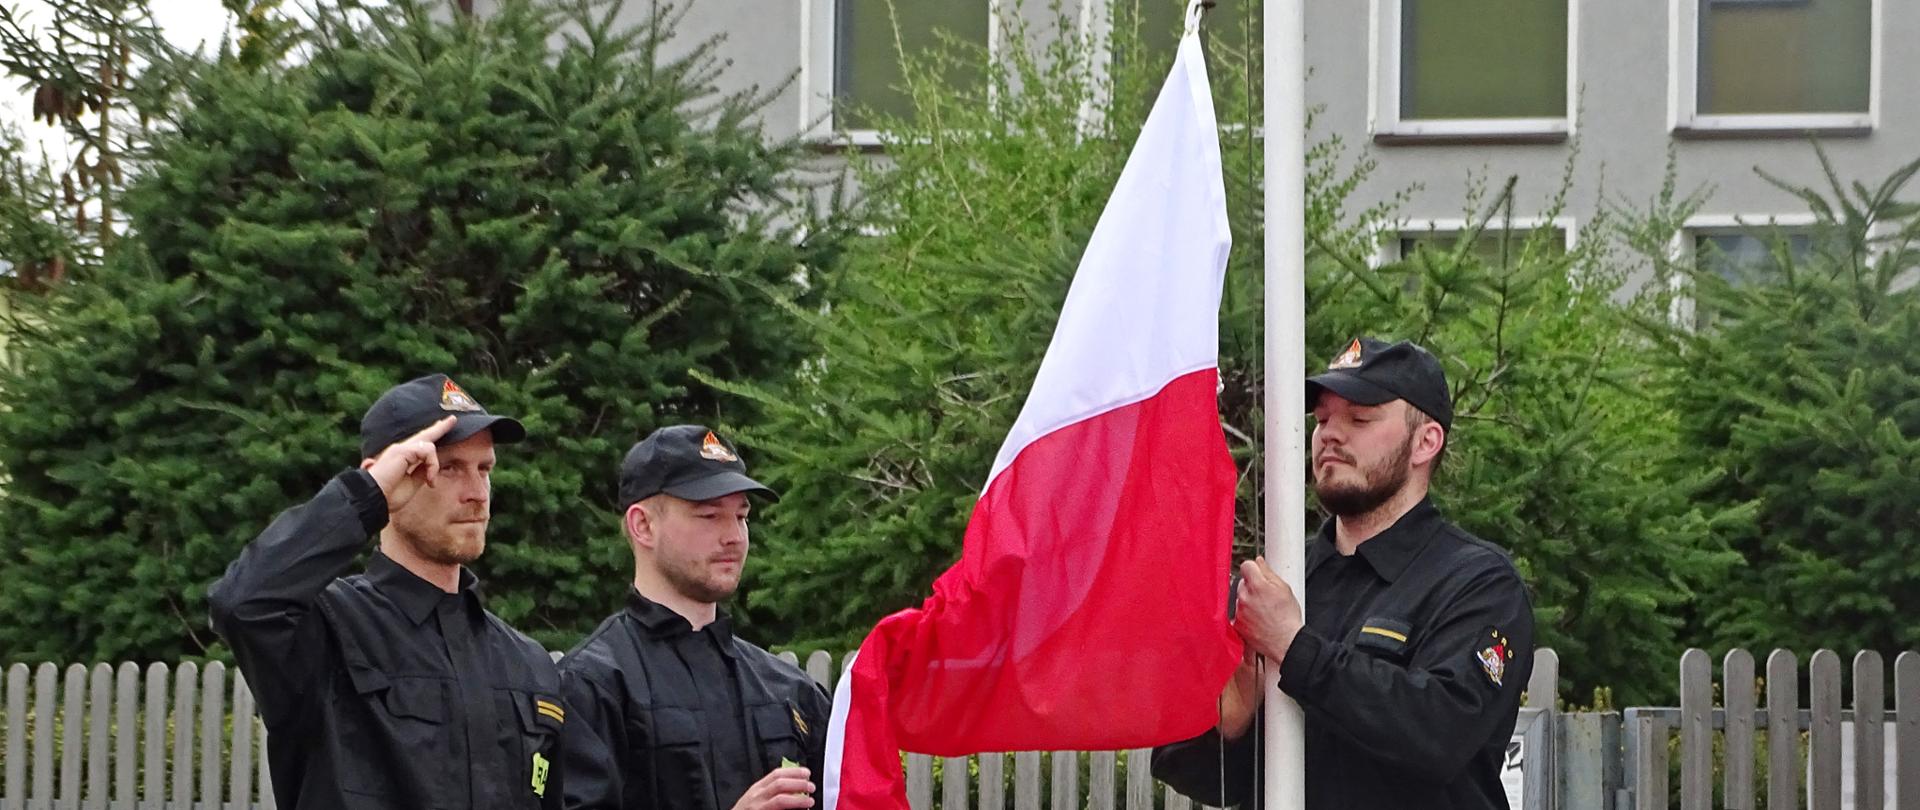 Zdjęcie wykonano w ciągu dnia przed budynkiem Komendy Powiatowej Państwowej Straży Pożarnej w Sępólnie Krajeńskim. Strażacy ubrani w mundury koszarowe stoją przed masztem na który wciągają flagę Rzeczypospolitej Polski.